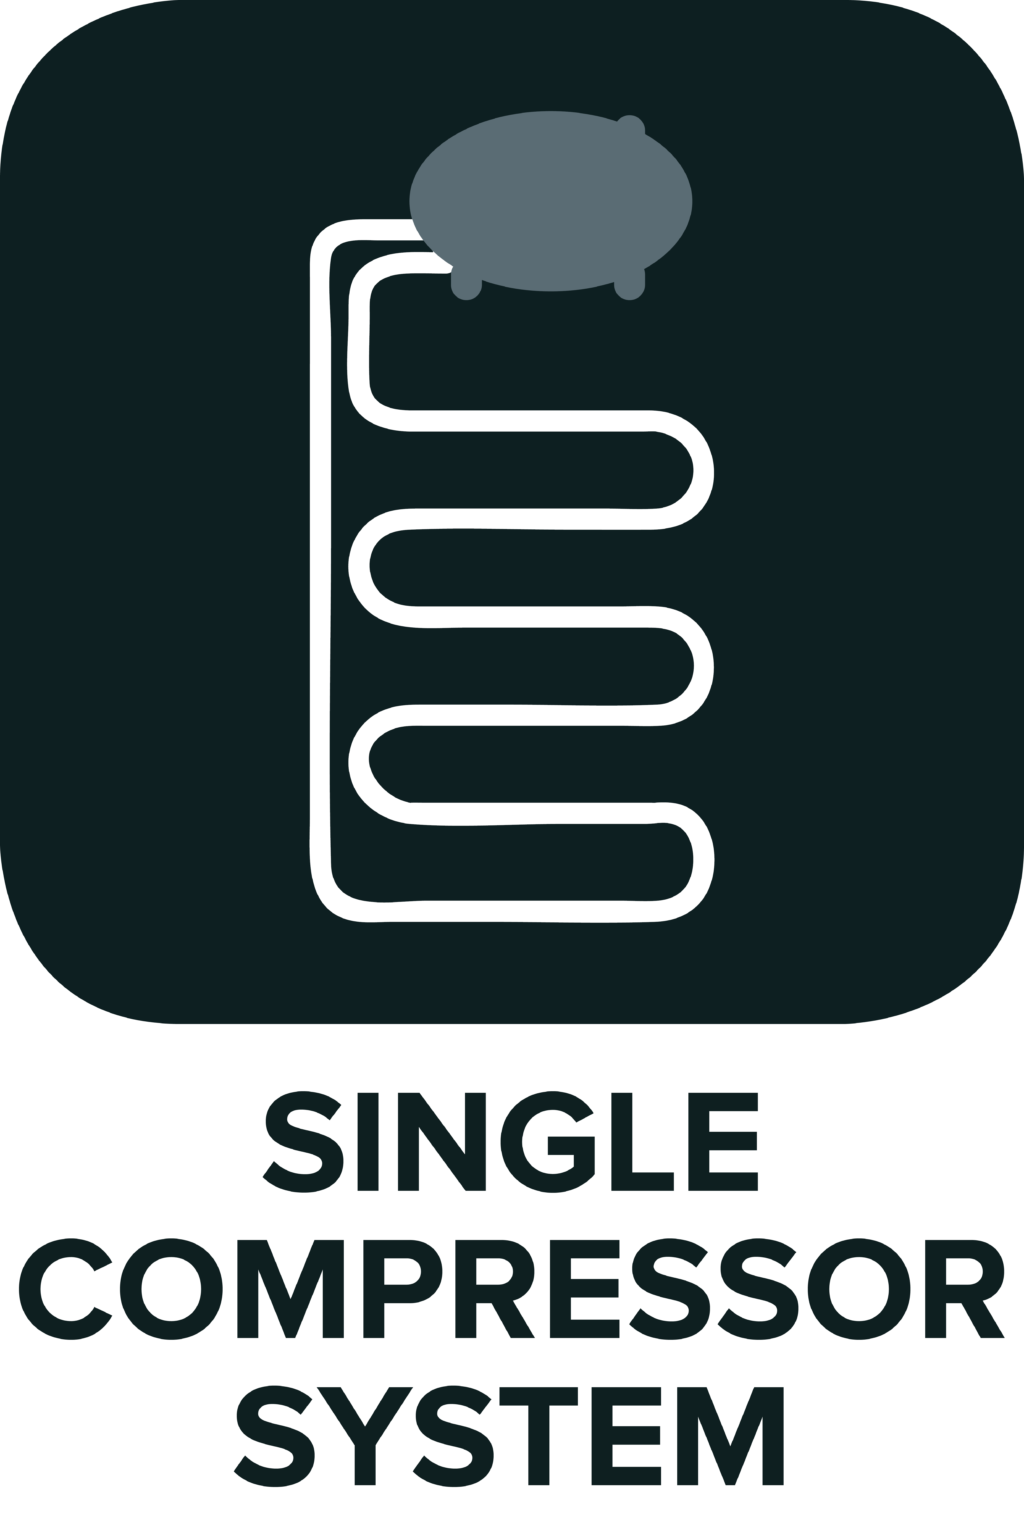 Single-compressor